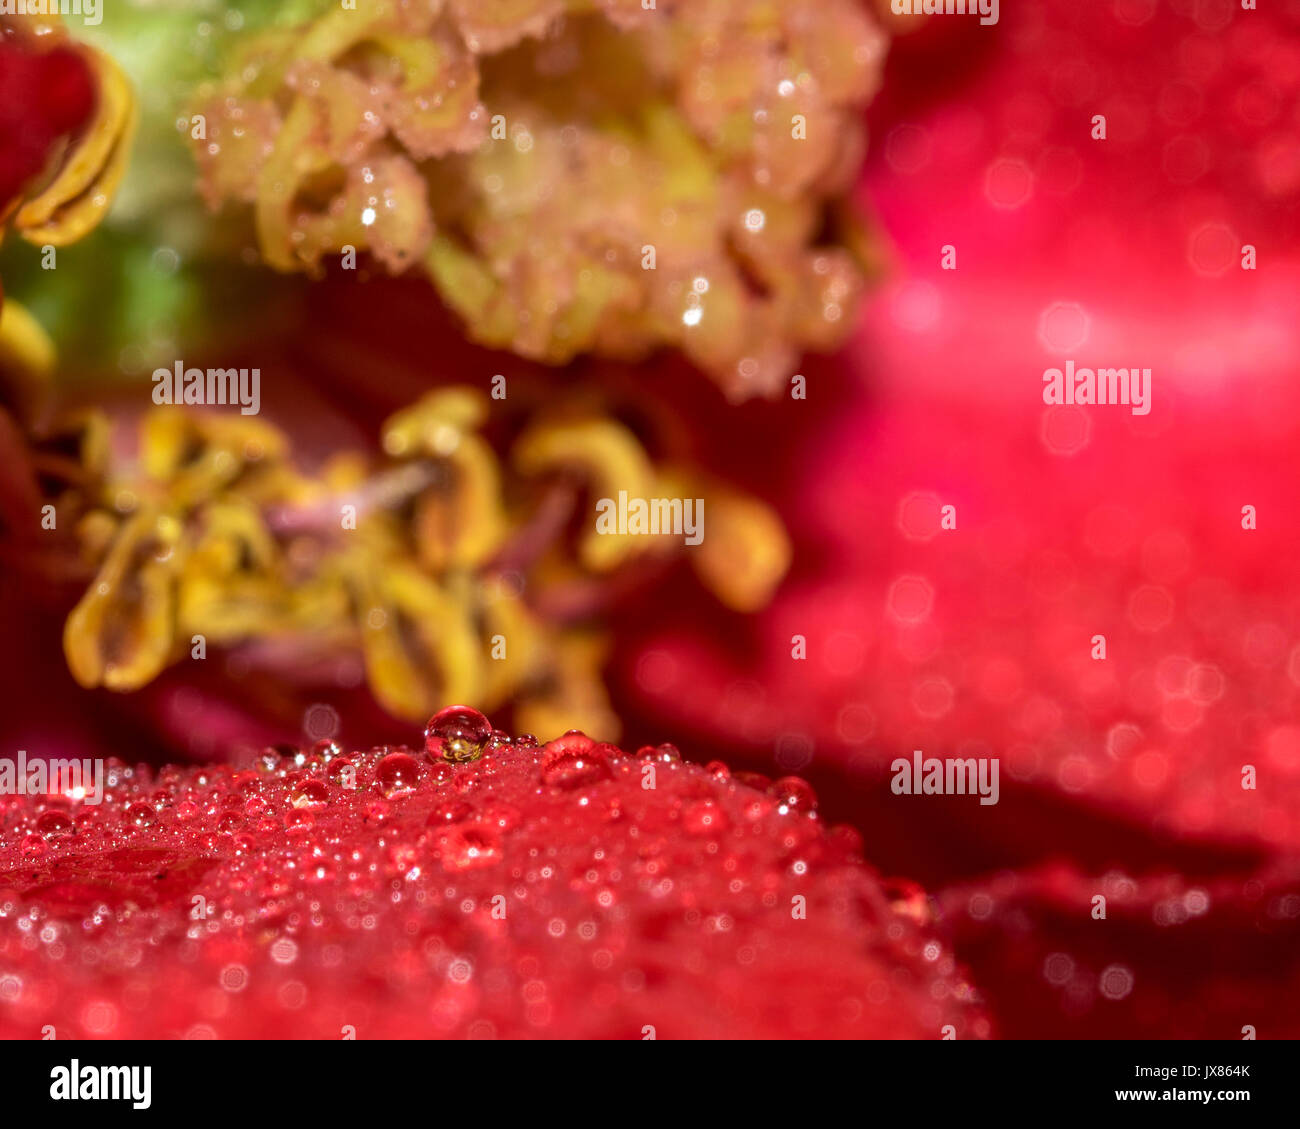 Pioggia di piccole goccioline di acqua su una rosa rossa petalo di fiore, che mostra il centro di fiori in background Foto Stock